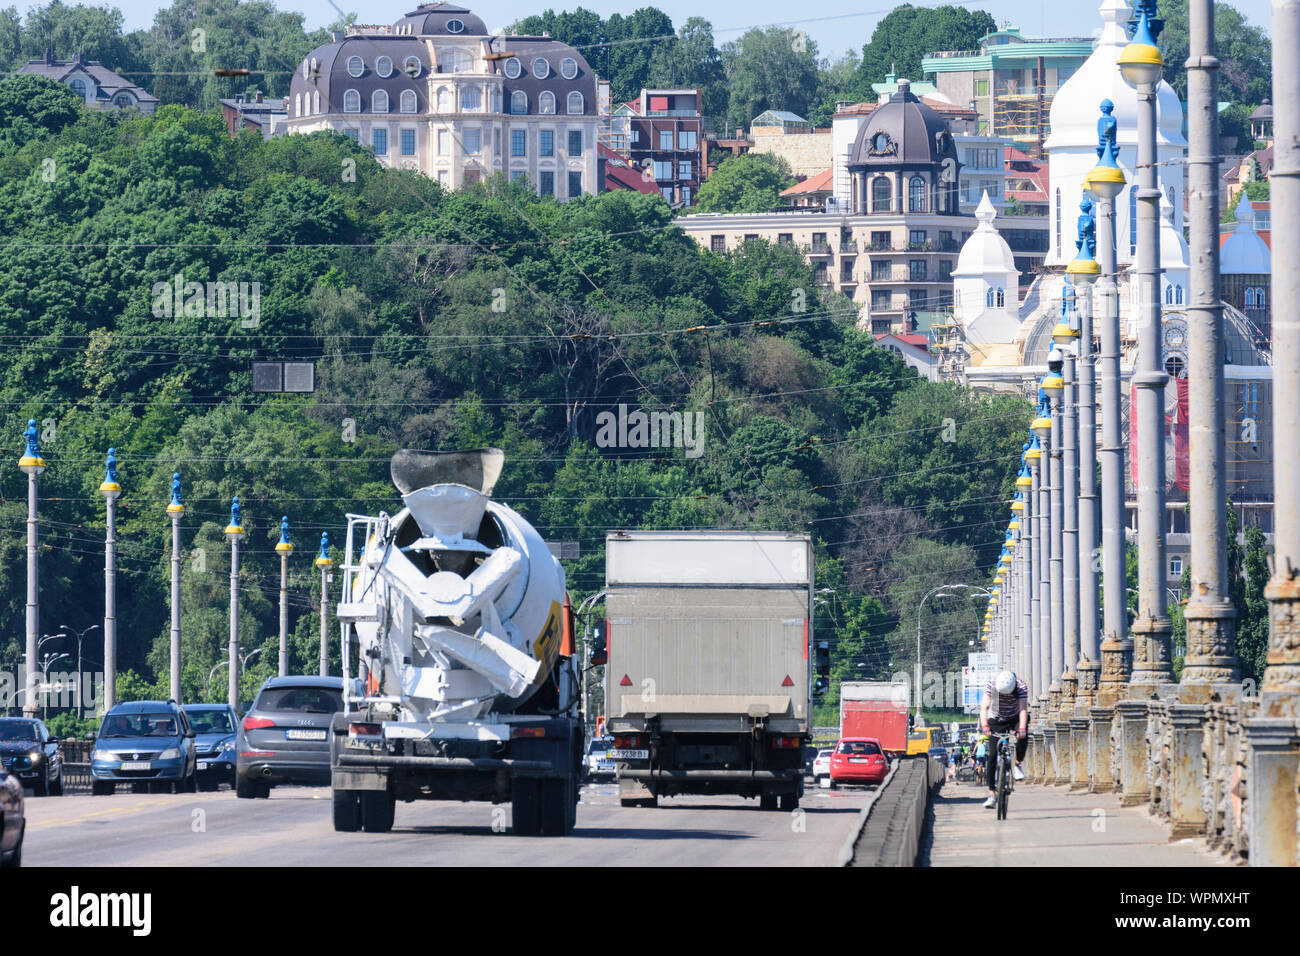 Kiew, Kiew: Paton Brücke, Lkw, Pkw, Fahrrad, Kiew, Ukraine Stockfoto